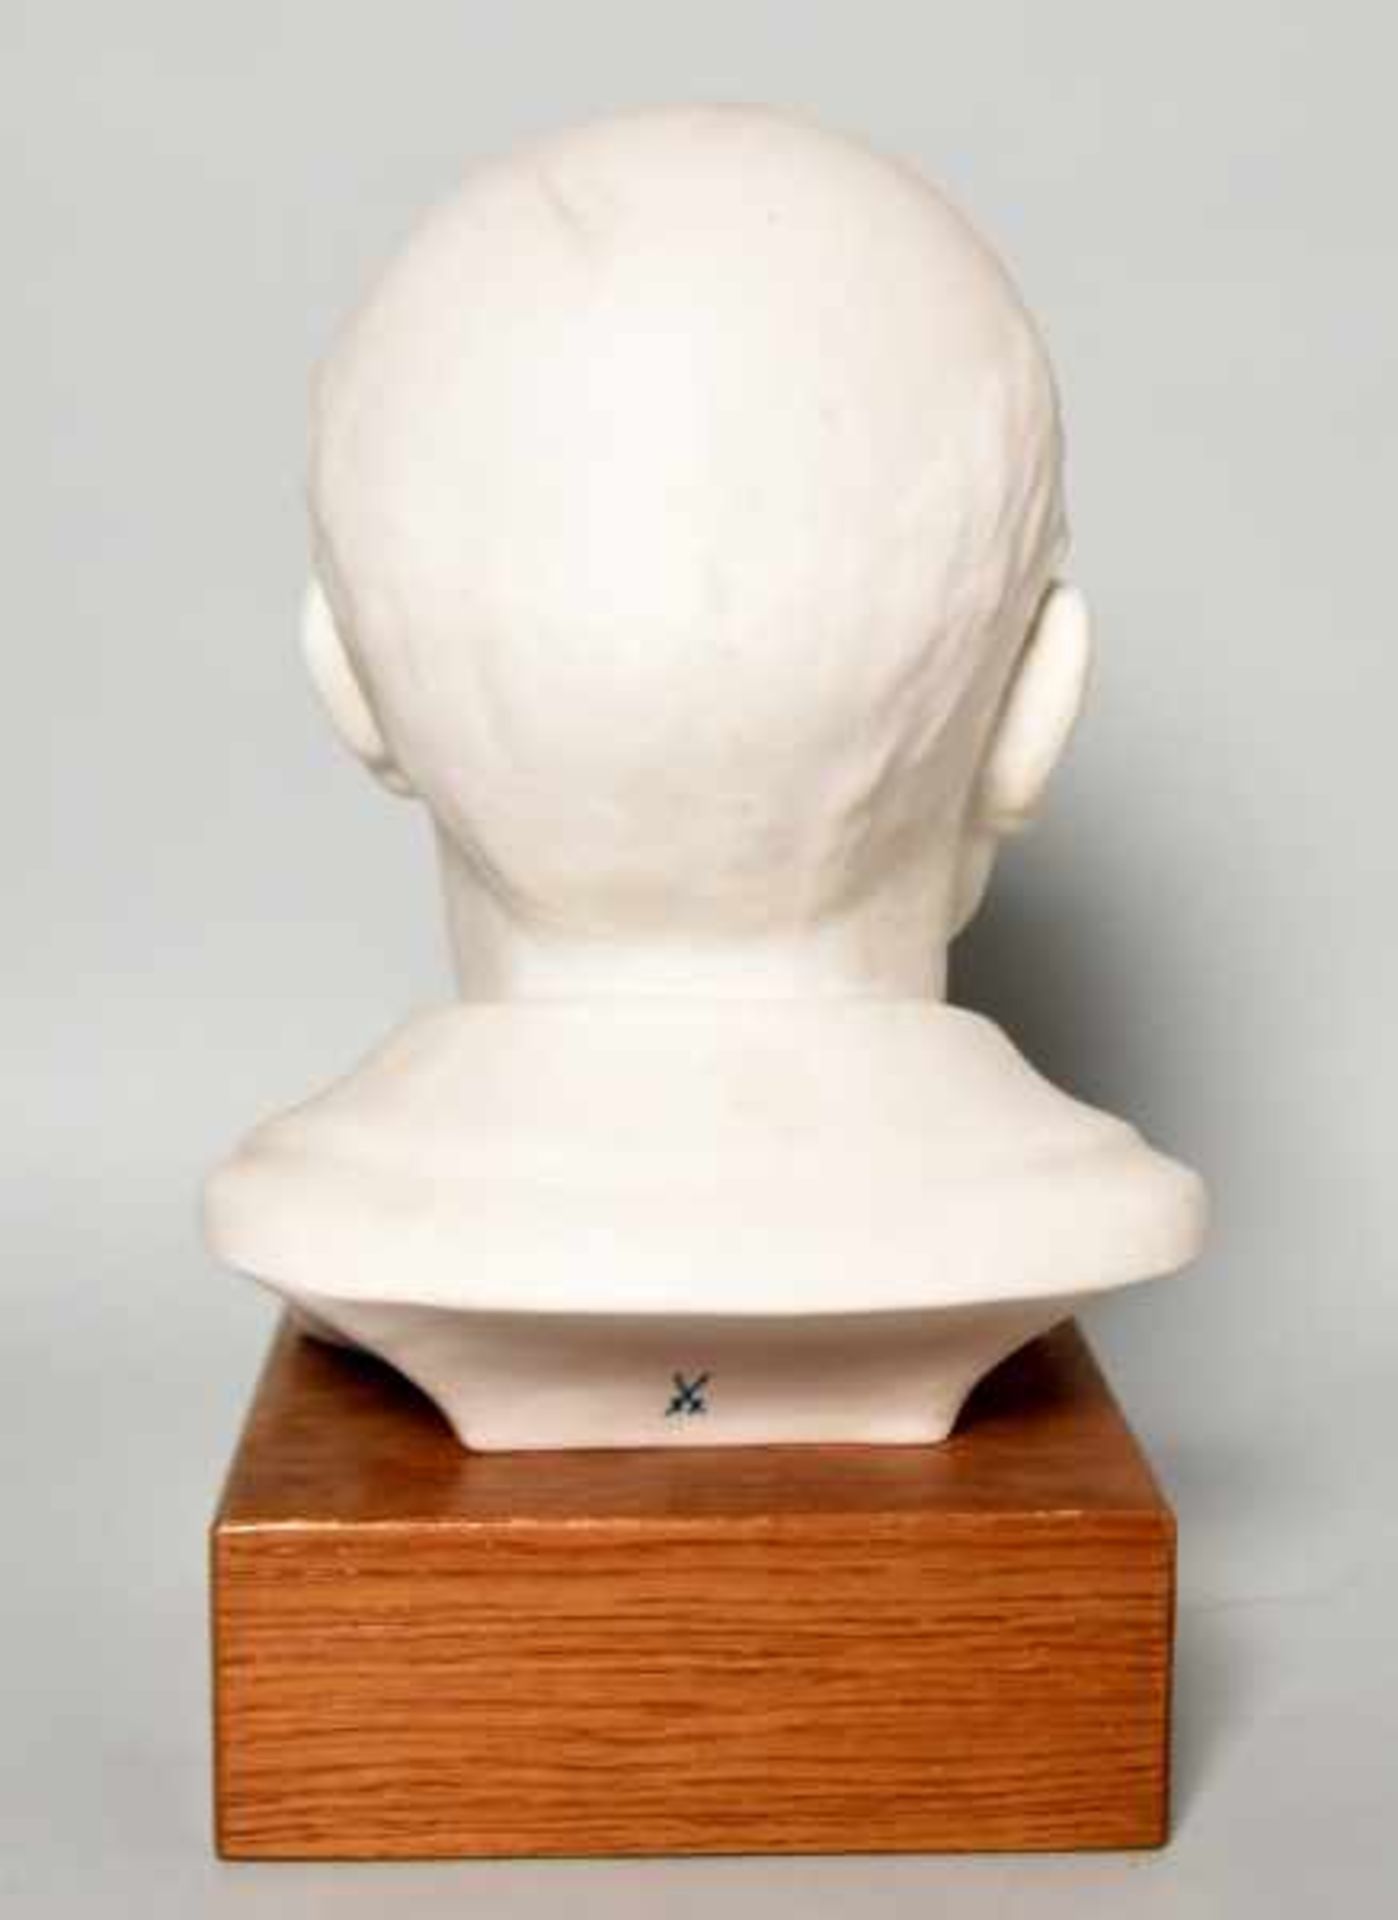 KLEINBÜSTE LENIN plastischer Kopf in Weißporzellan auf Holzsockel, Schwertermarke Meissen, H 23 x 17 - Bild 2 aus 2